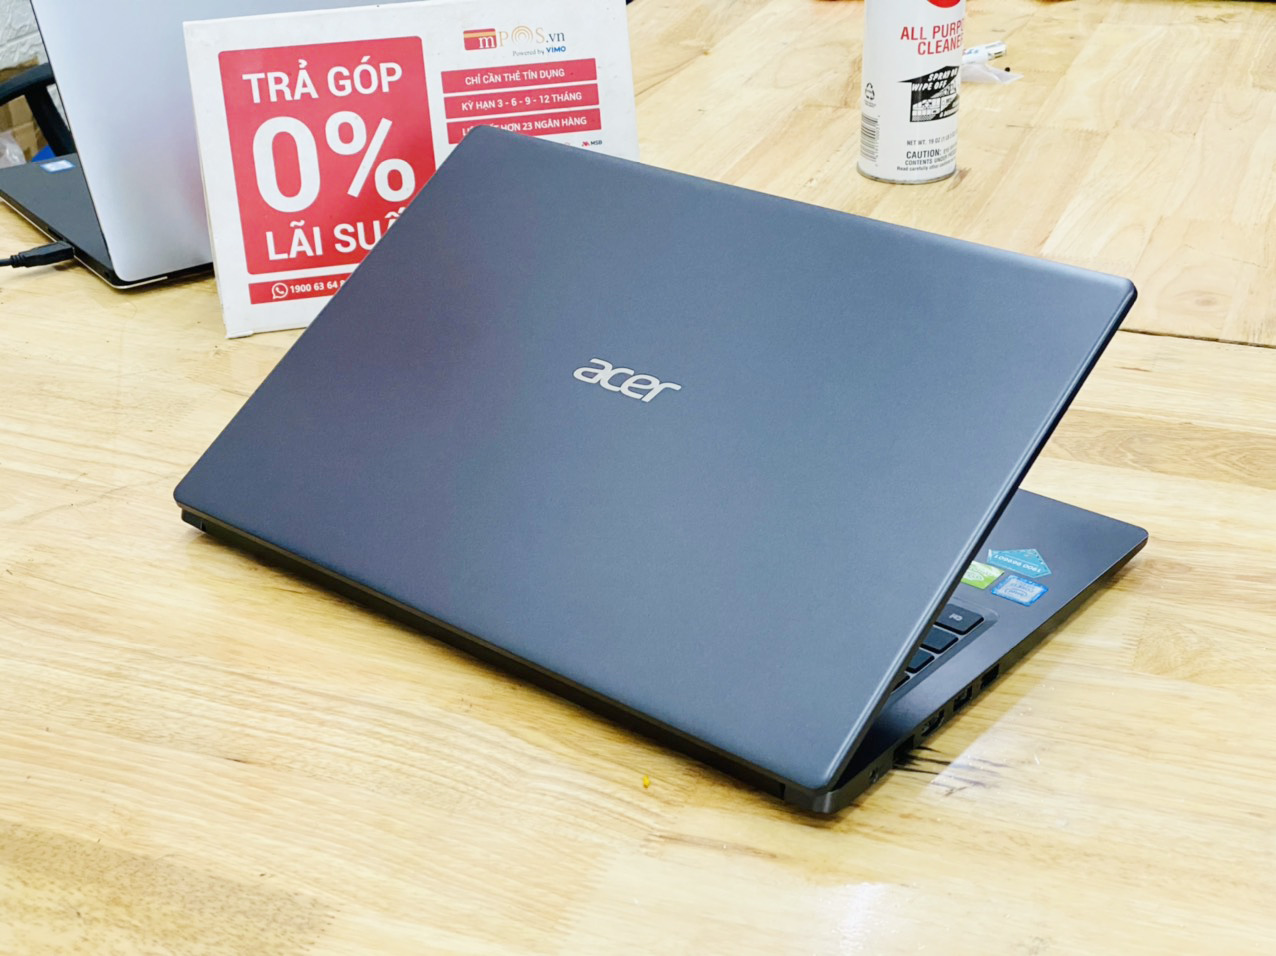 Laptop Acer Aspire A315-55G i7-8565U Ram 8G SSD 512G Vga Nvidia MX230 15.6 inch Full HD Viền Mỏng